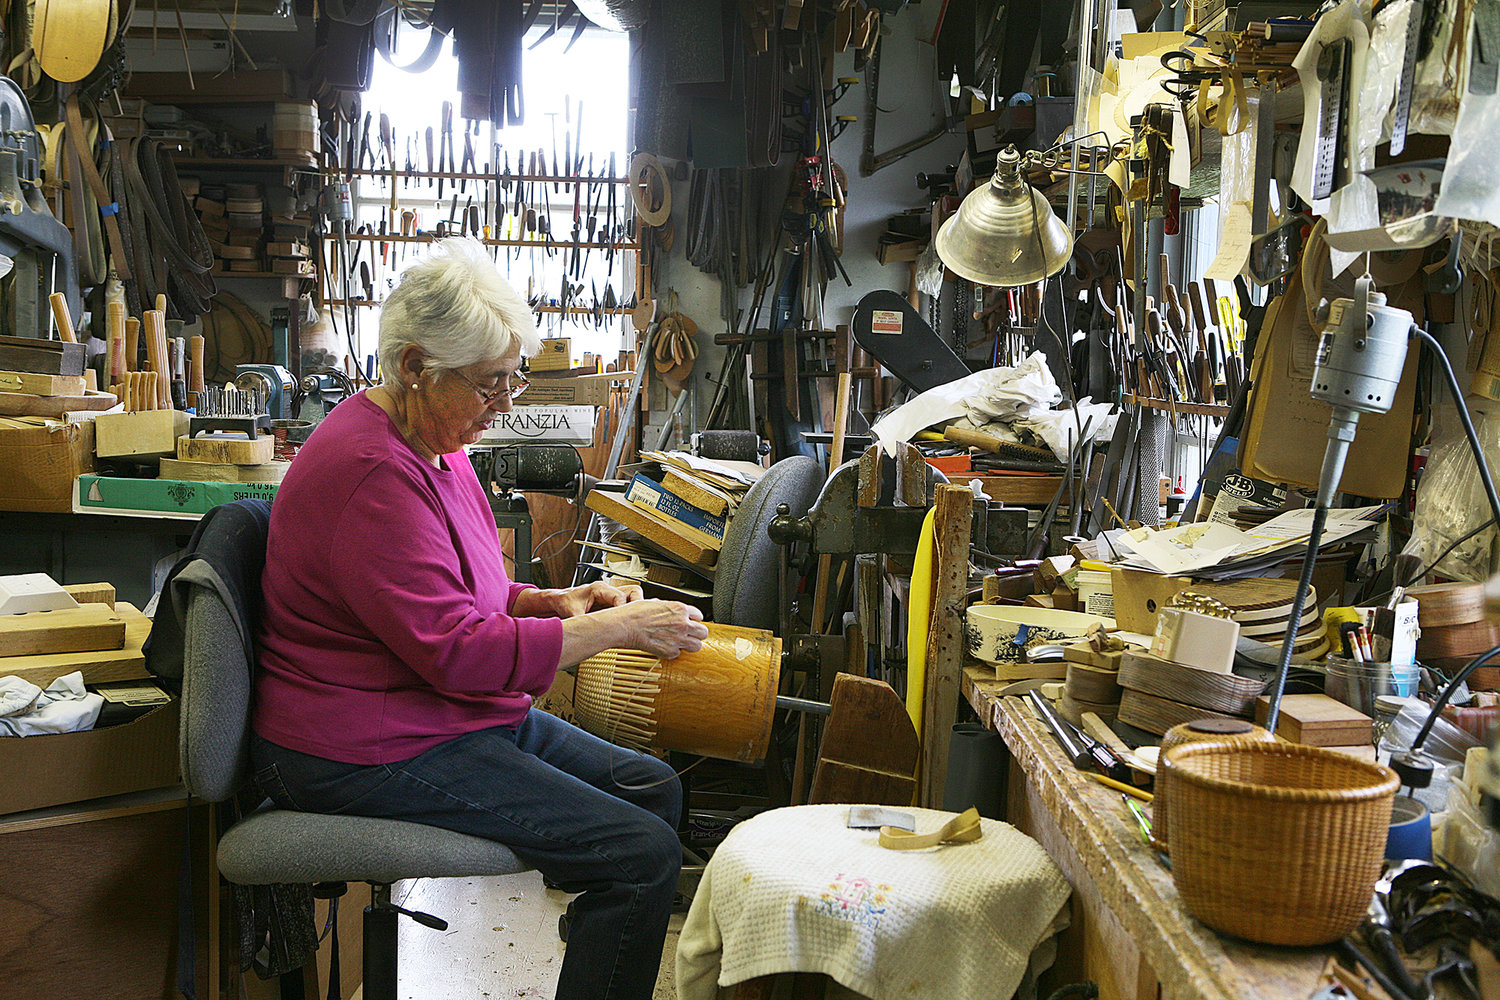 Island basket maker Susan Ottison works on a basket in the shop she shares with her husband Karl on Orange Street.